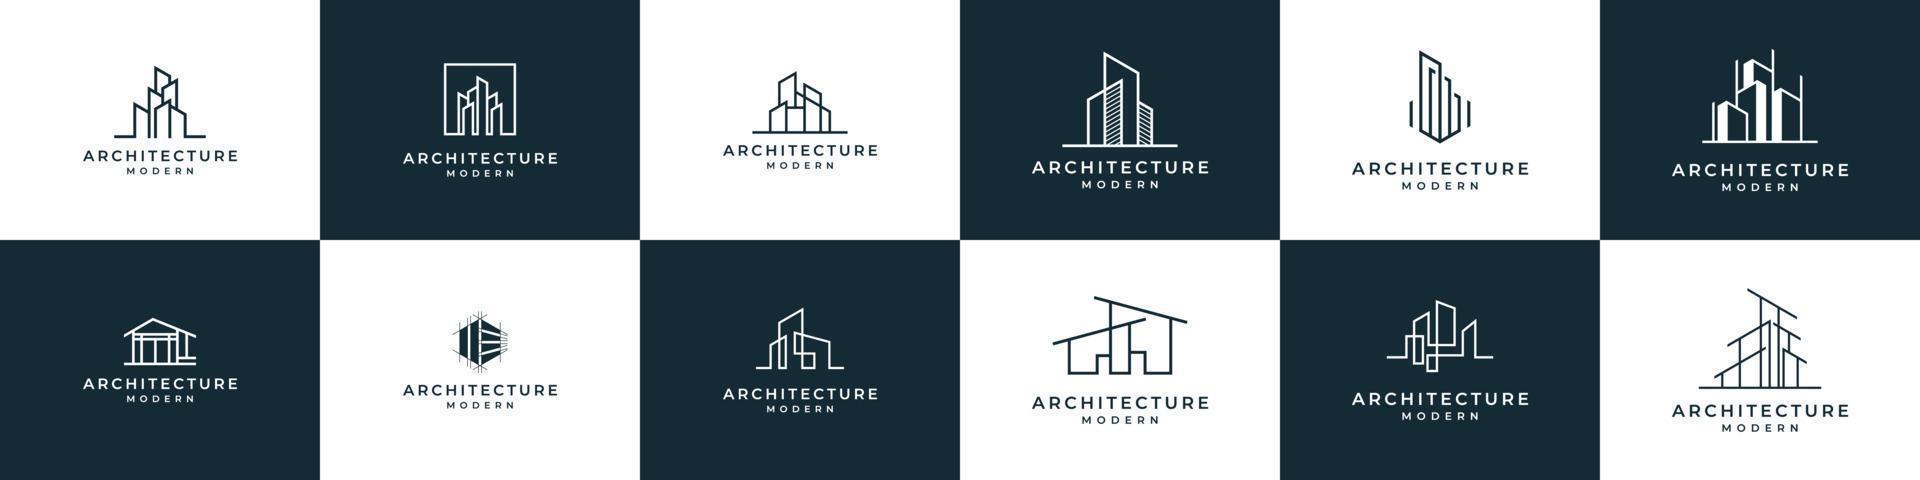 reeks van logo architectuur met voering concept logo ontwerp echt landgoed sjabloon vector